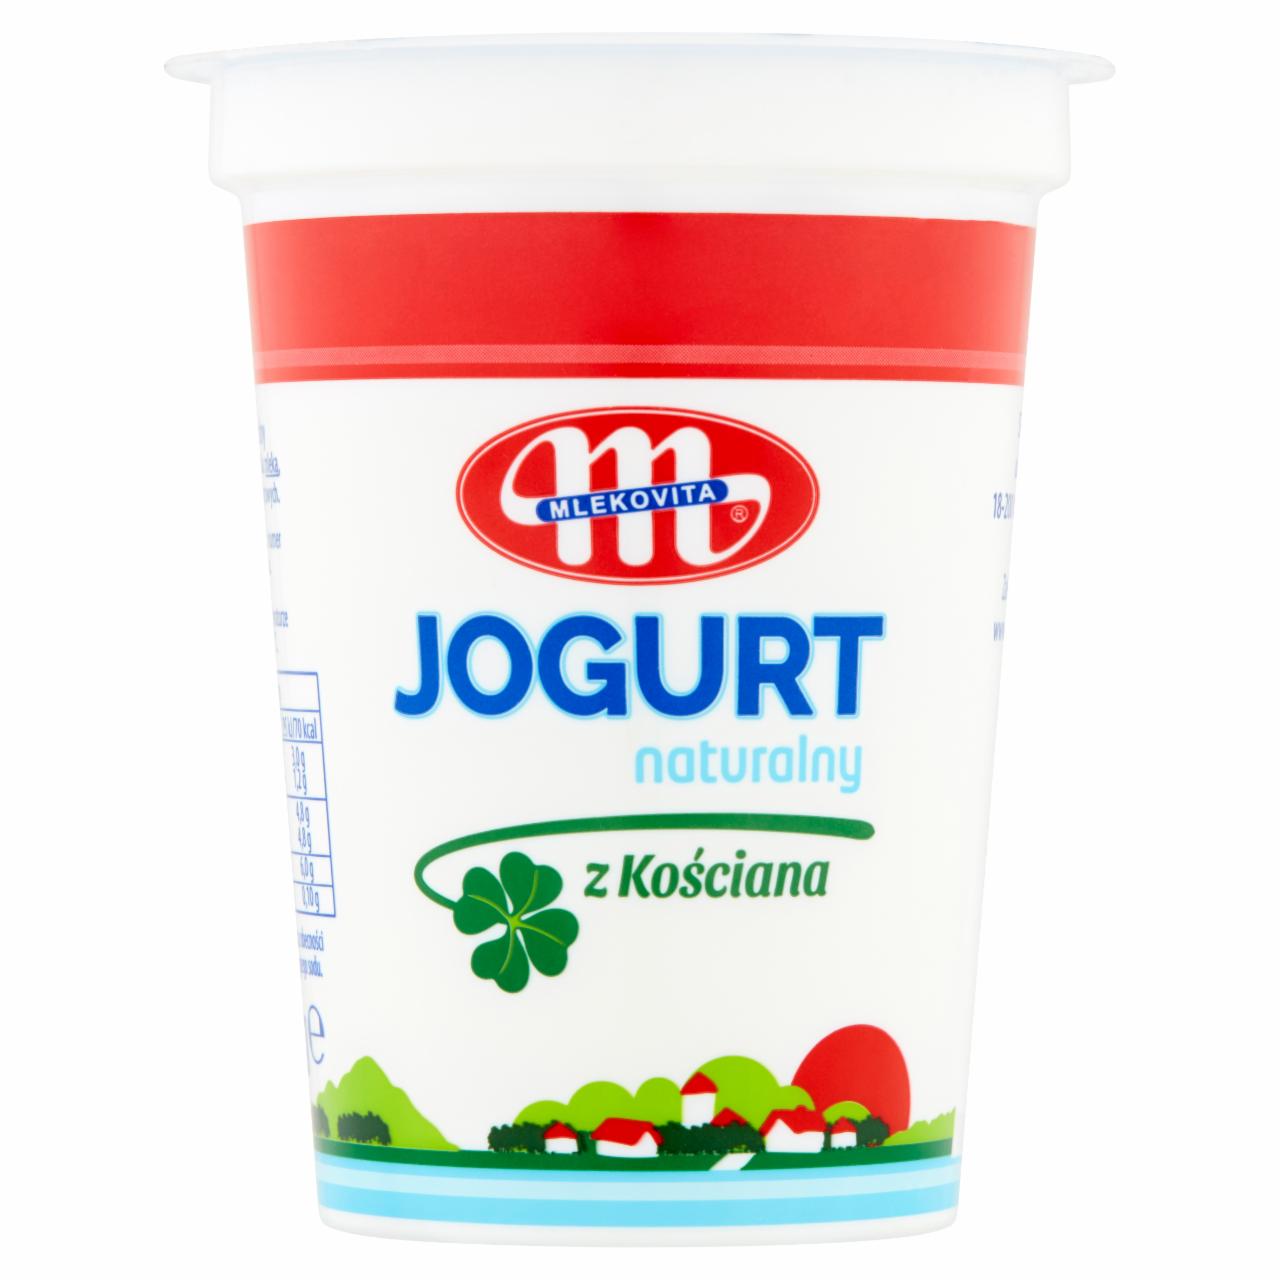 Zdjęcia - Mlekovita Jogurt naturalny z Kościana 400 g